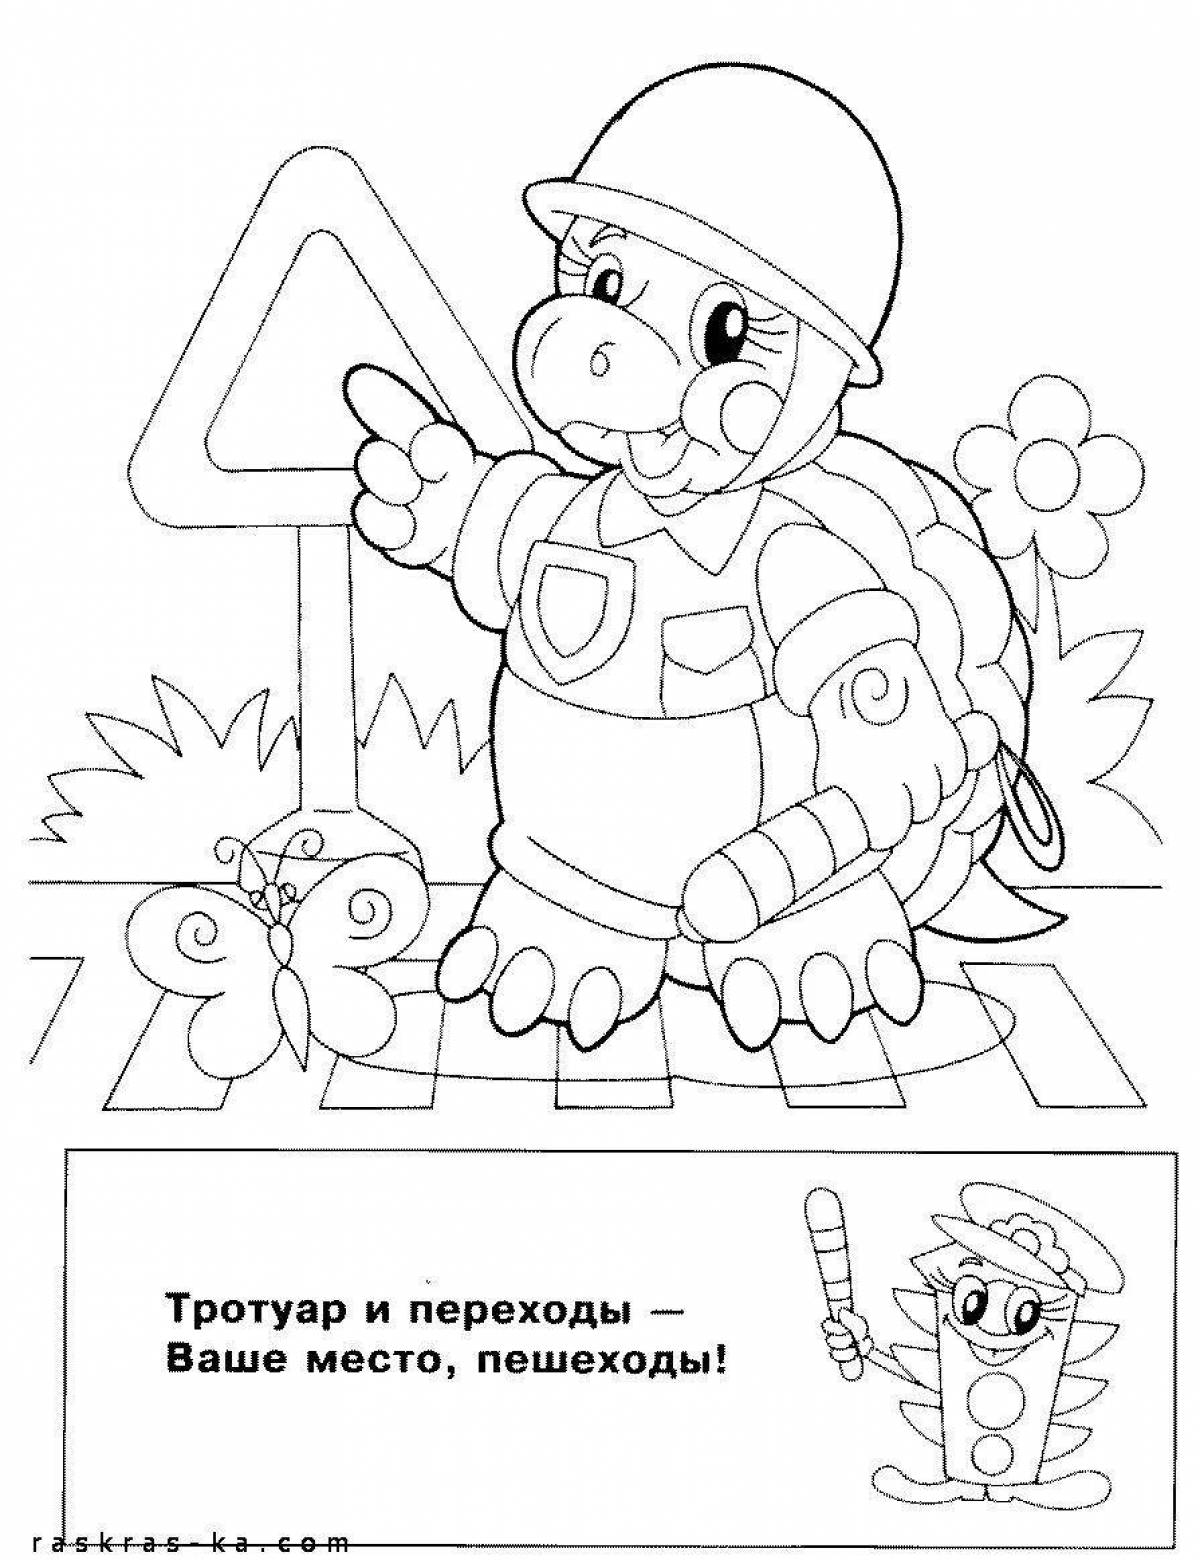 Приглашающая раскраска для правил дорожного движения в детском саду